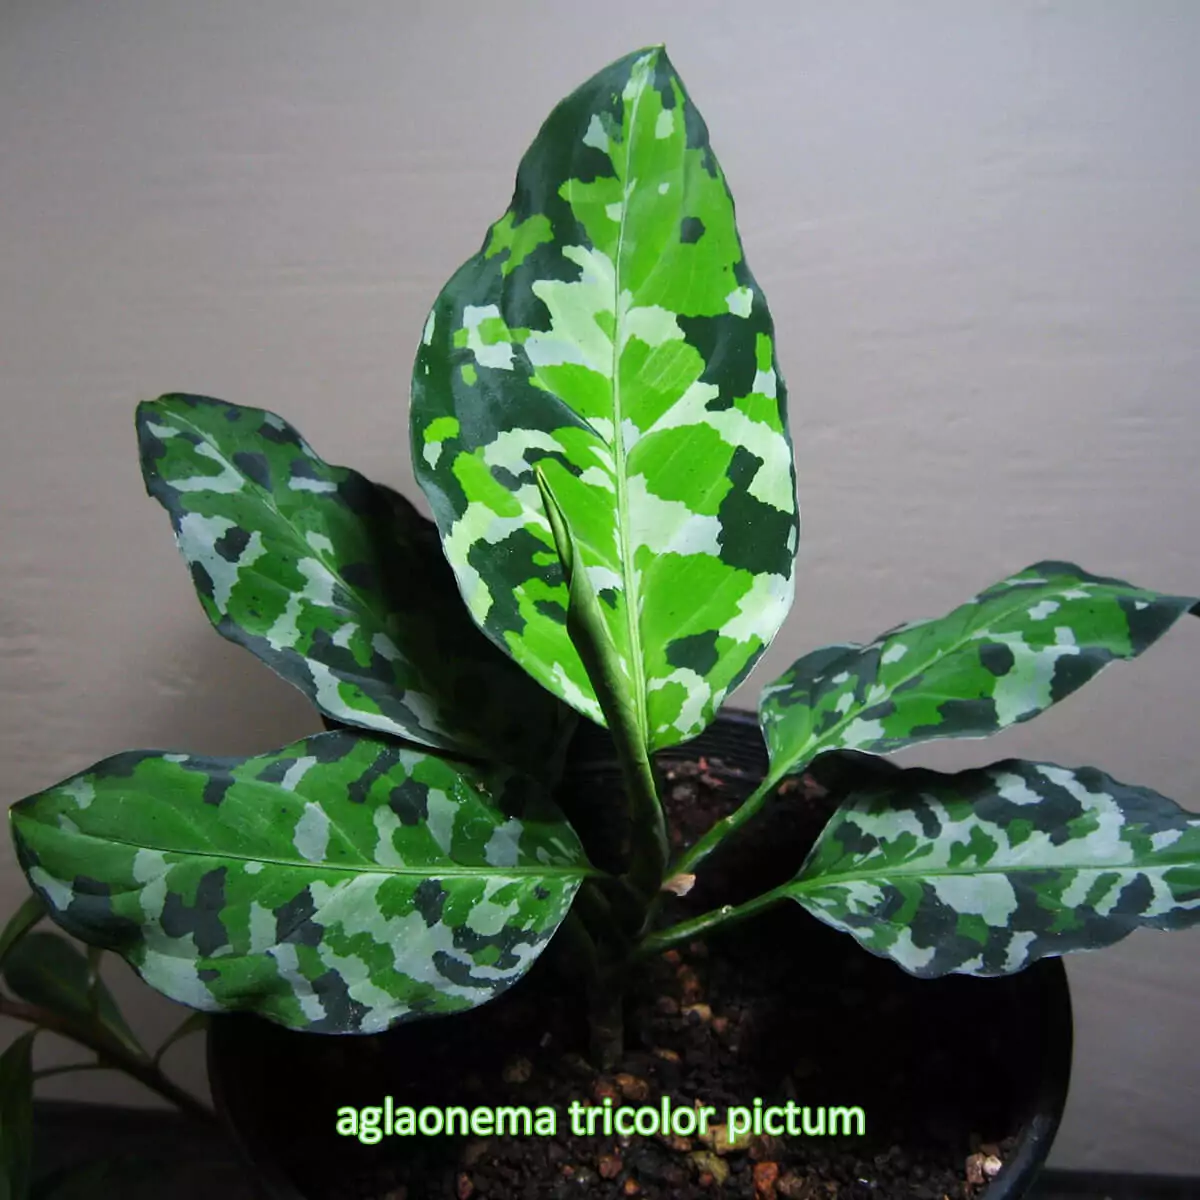 aglaonema tricolor pictum